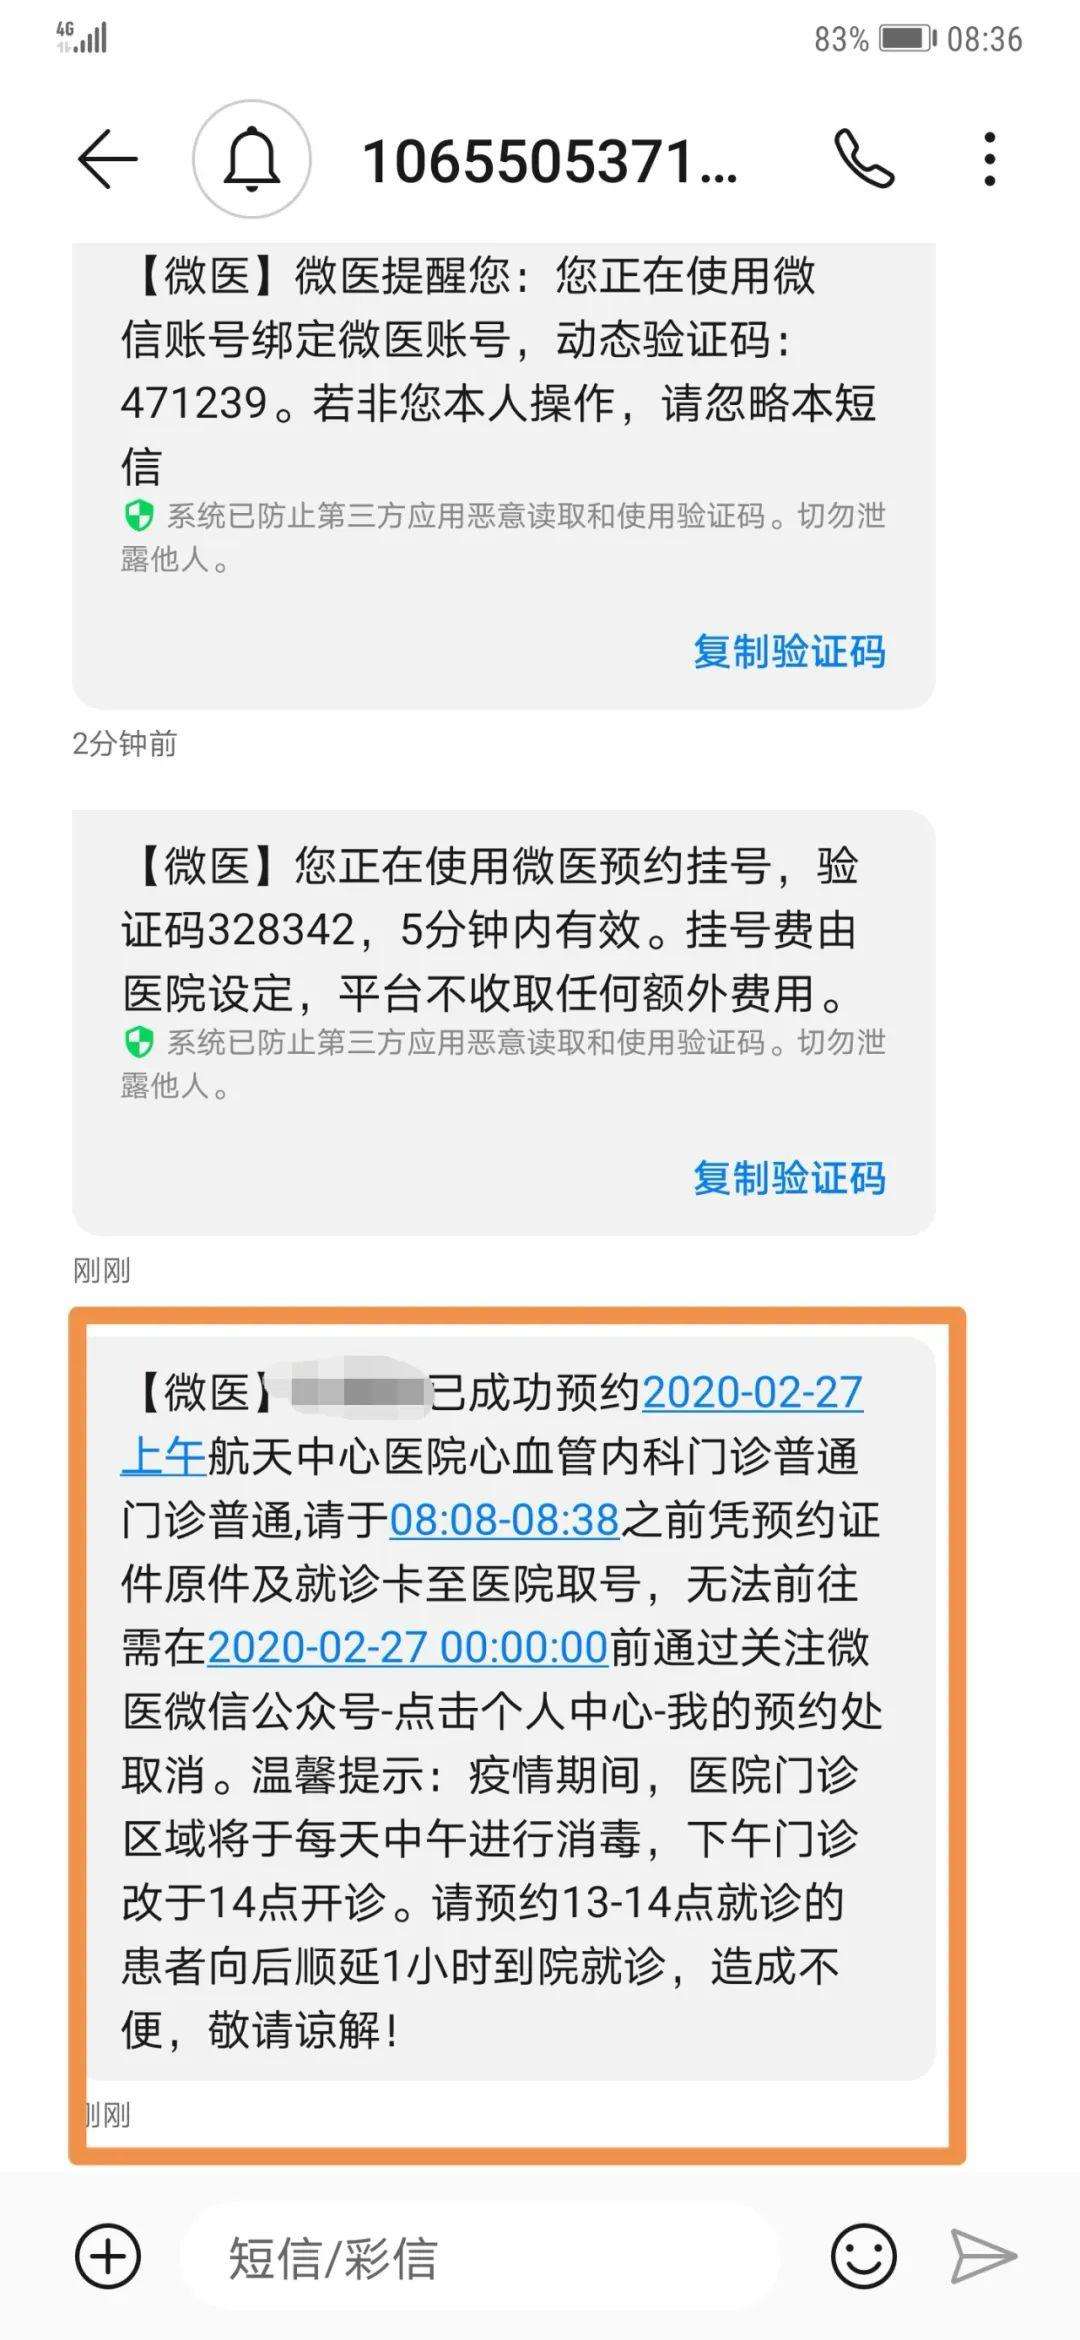 包含北京中医药大学东方医院网上预约挂号，预约成功再收费